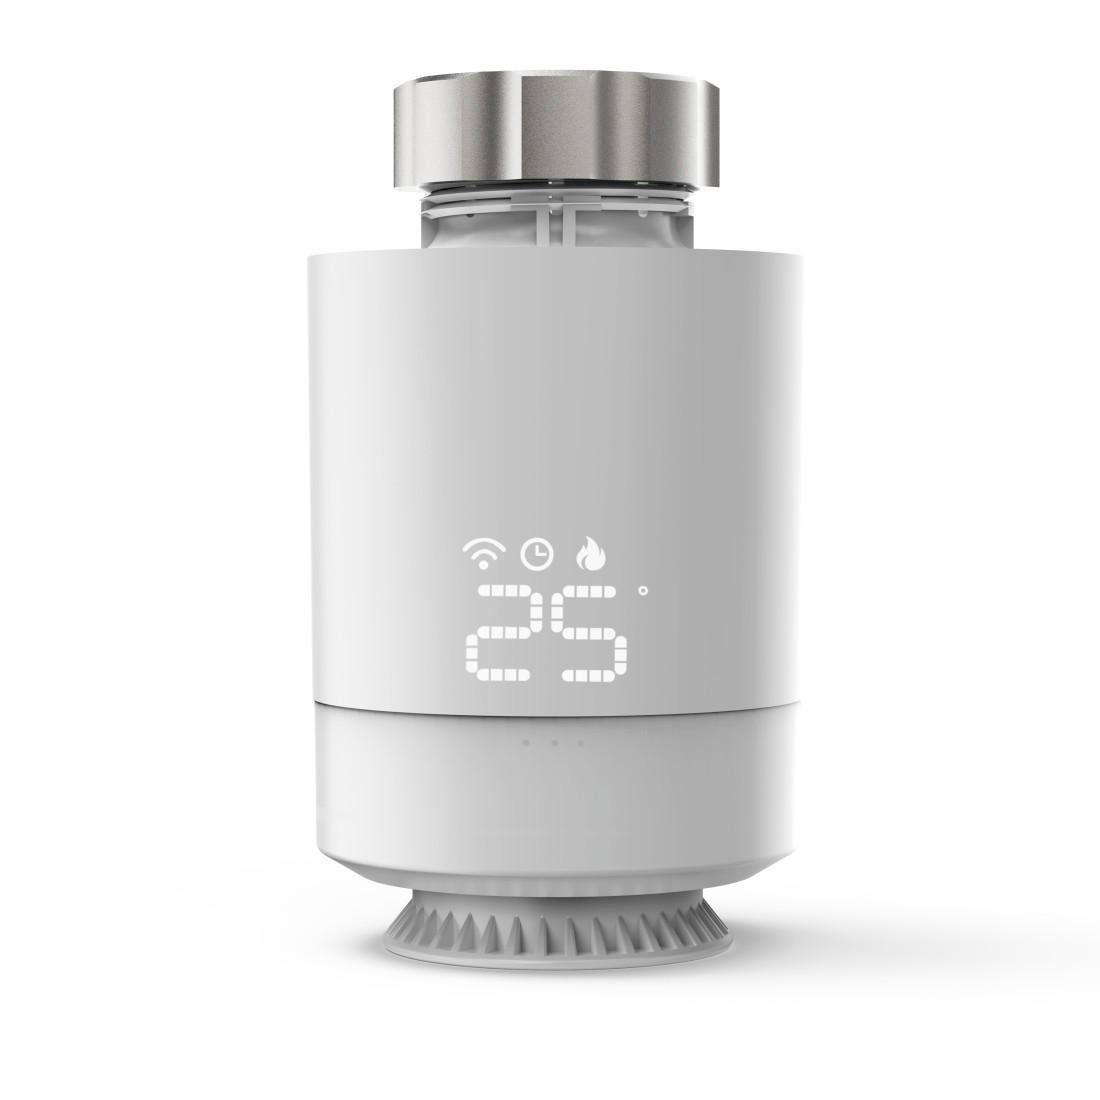 WLAN Heizungsthermostat Smartes für Heizungssteuerung, mit Smart-Home-Station Adapter Hama